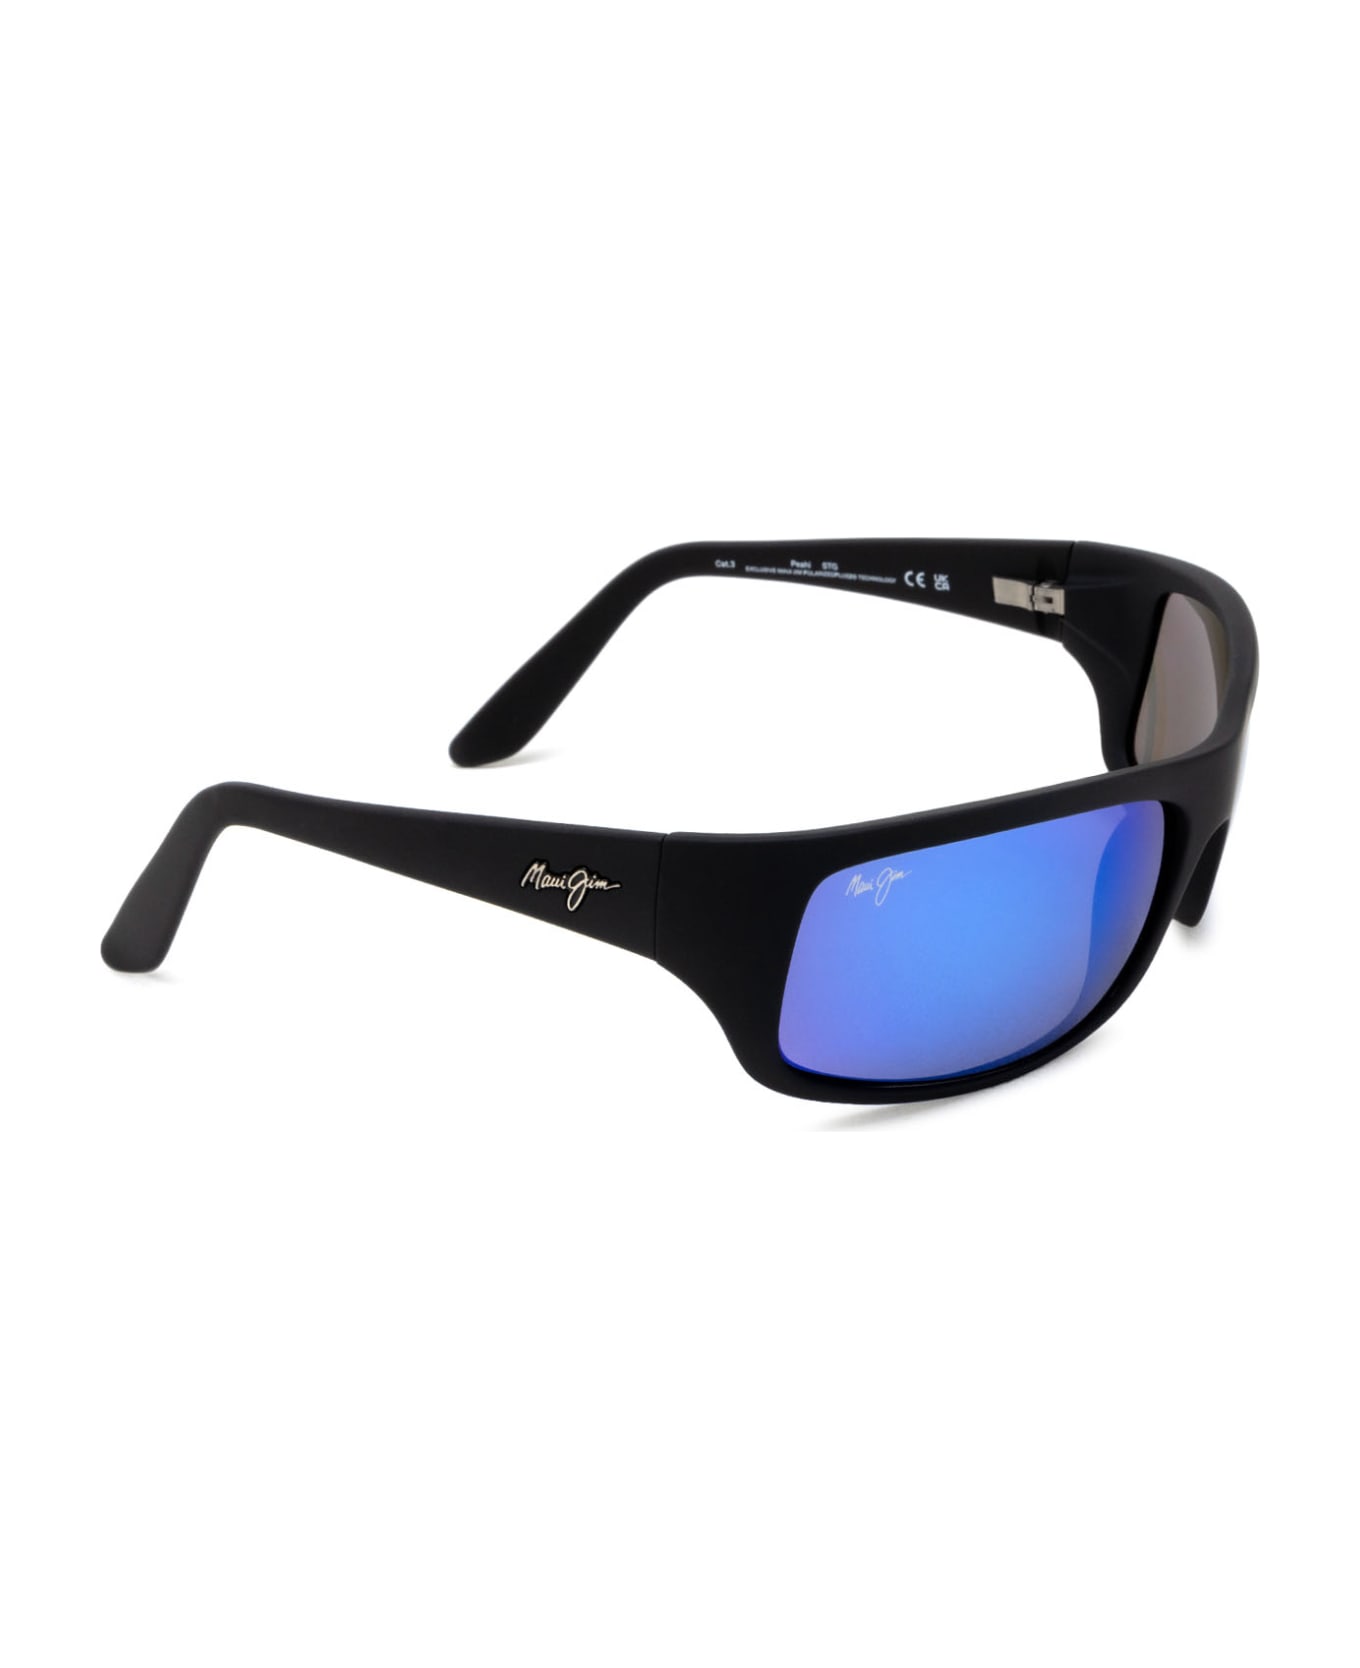 Maui Jim Mj0202s Black Sunglasses - Black